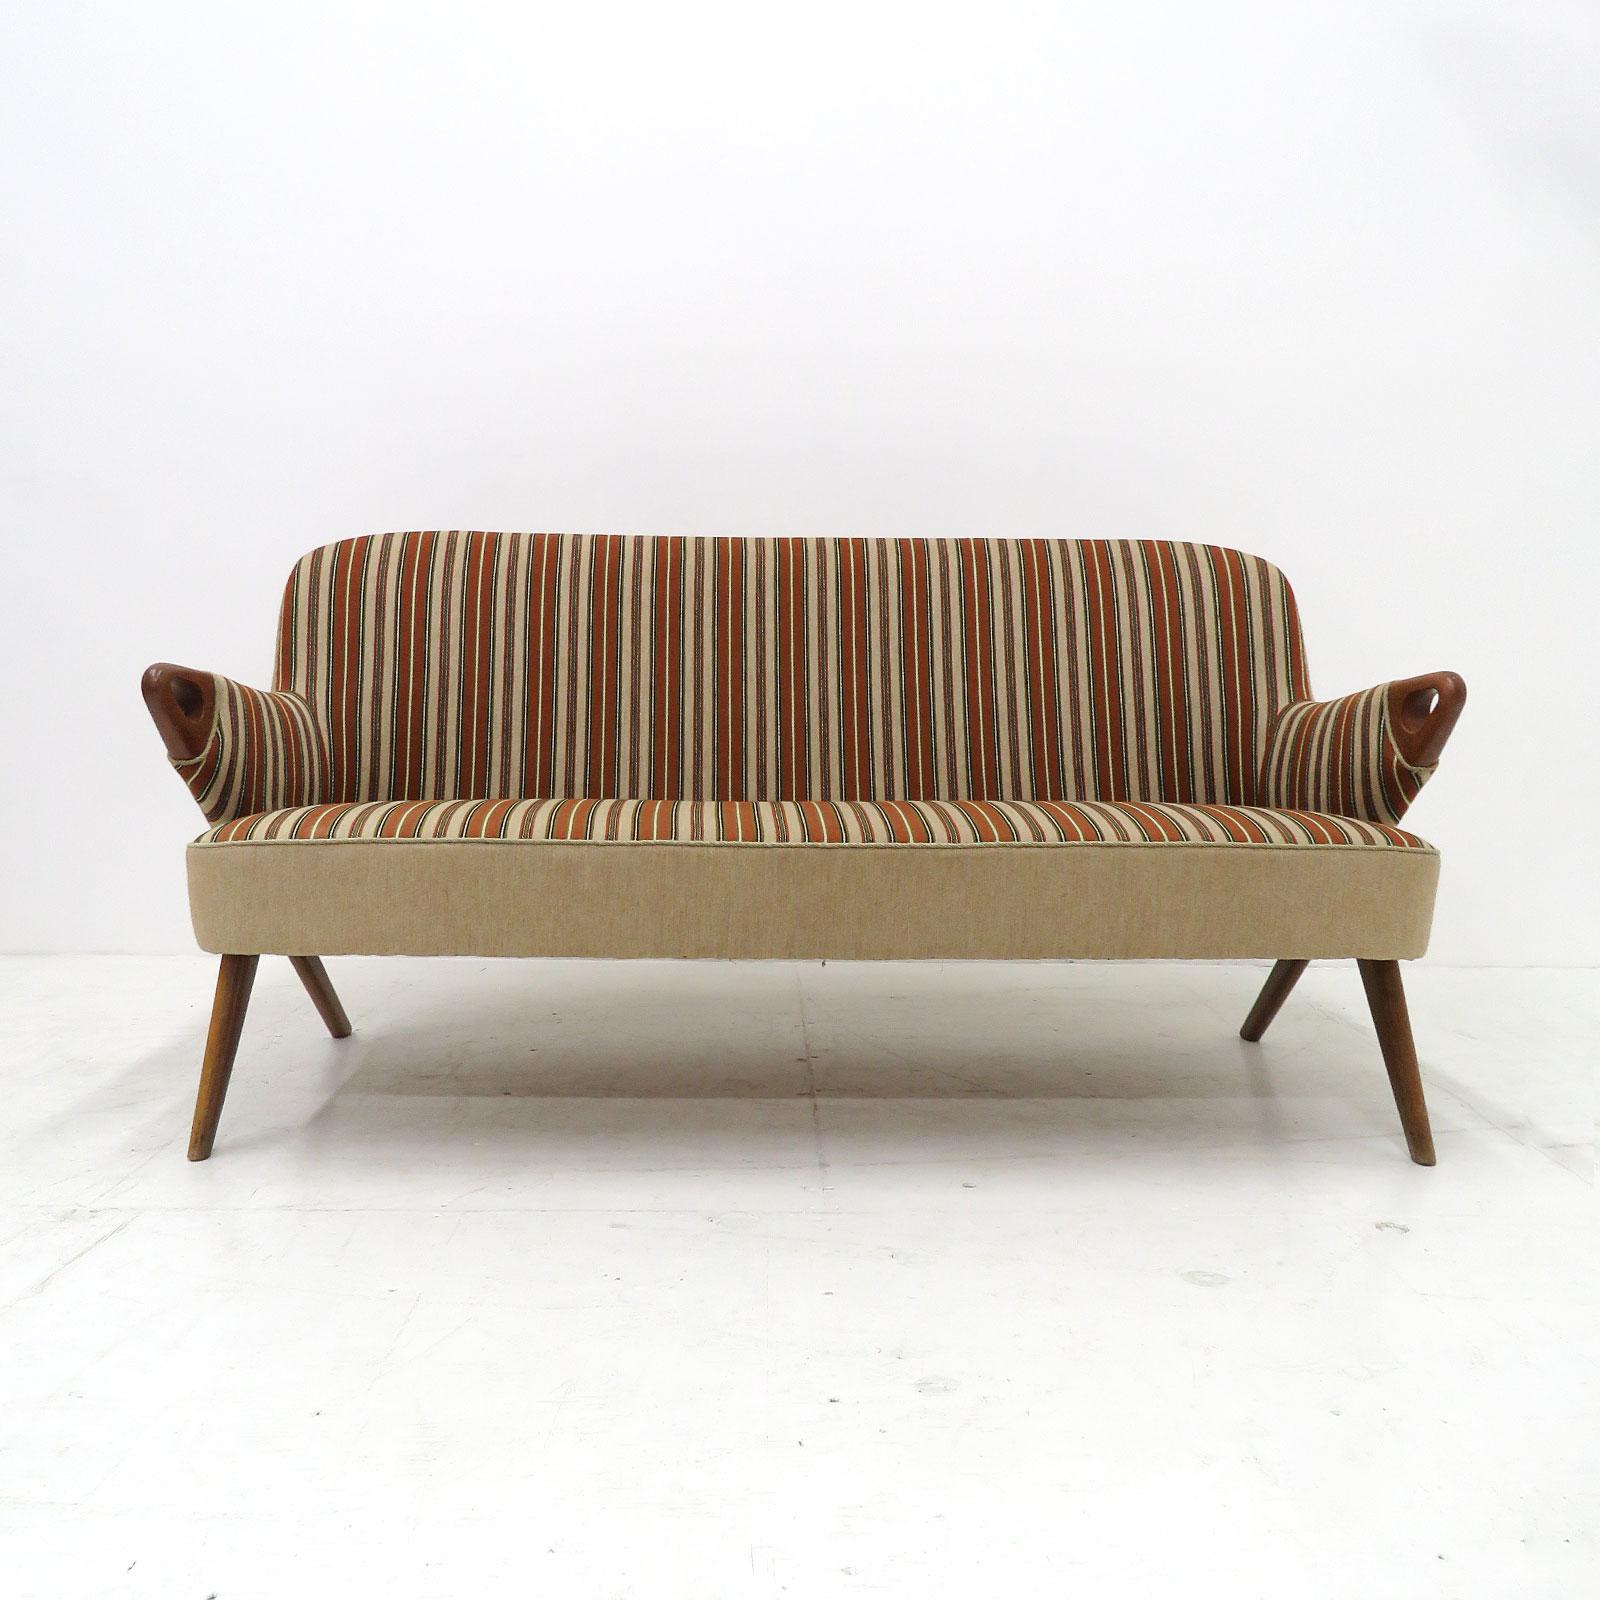 Wunderschönes dänisches Modernes Sofa, Svend Skipper zugeschrieben, 1950, mit erdigem, mehrfarbig gestreiftem Bezug auf Teakholzbeinen und mit skulpturalen Teakholz-Handauflagen.